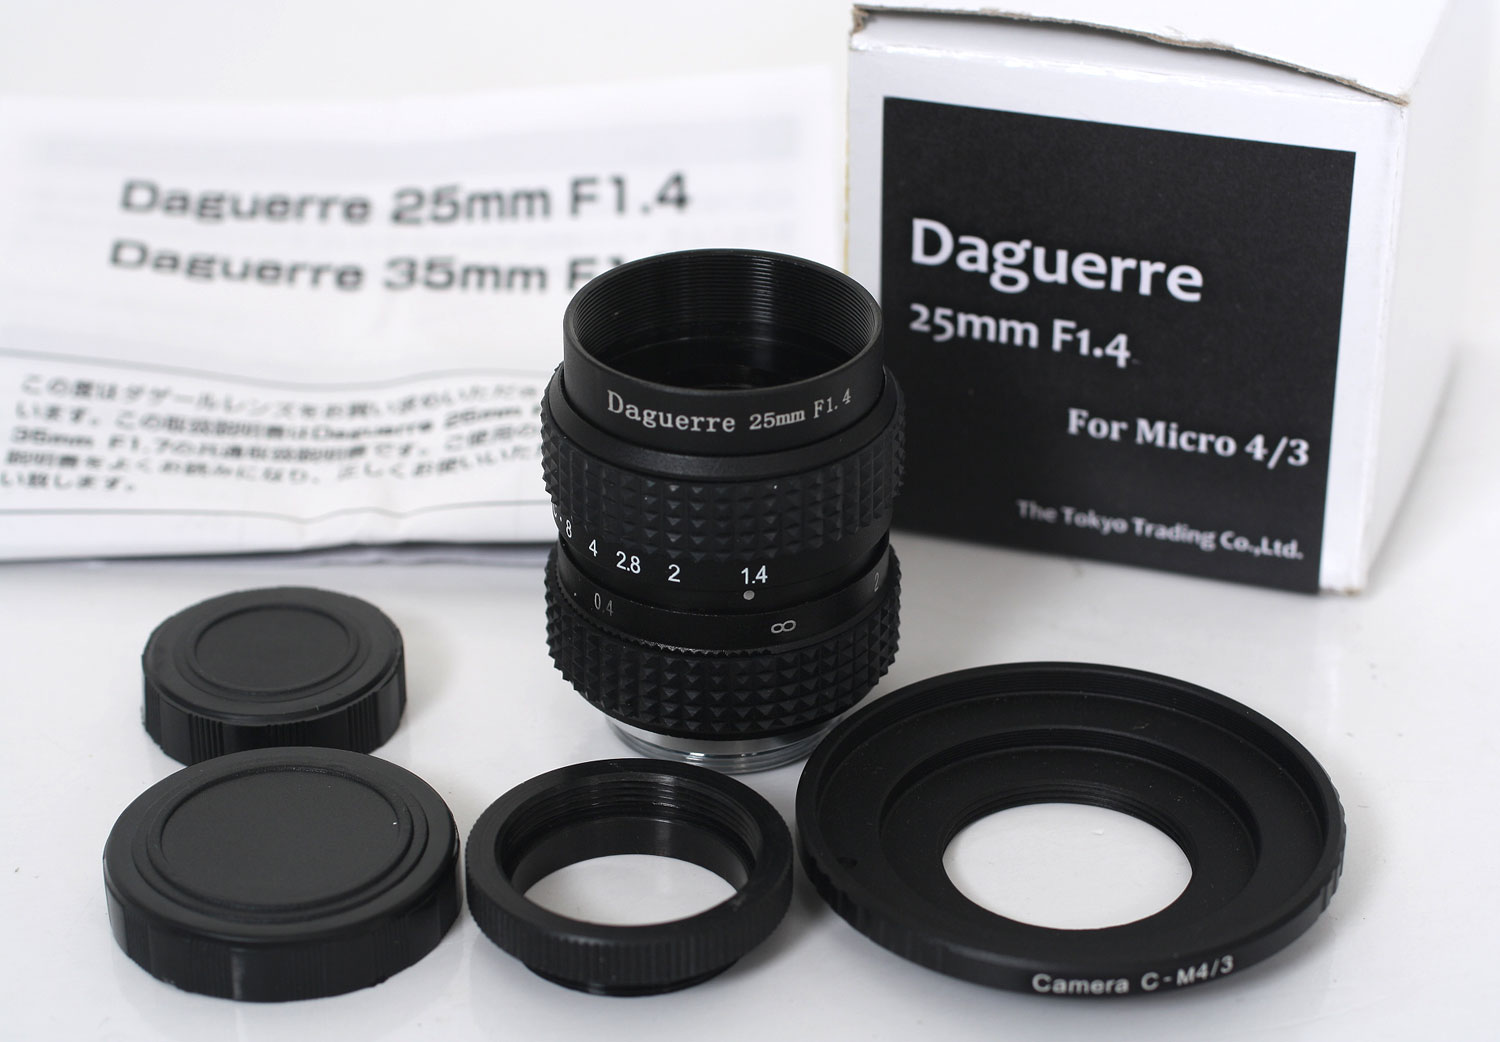 Daguerre 25mm F1.4 for Micro 4/3標準レンズ『即納〜3営業日後の発送』Micro Four Thirds マイクロフォーサーズマウントカメラ用大口径標準50mmF1.4相当レンズ